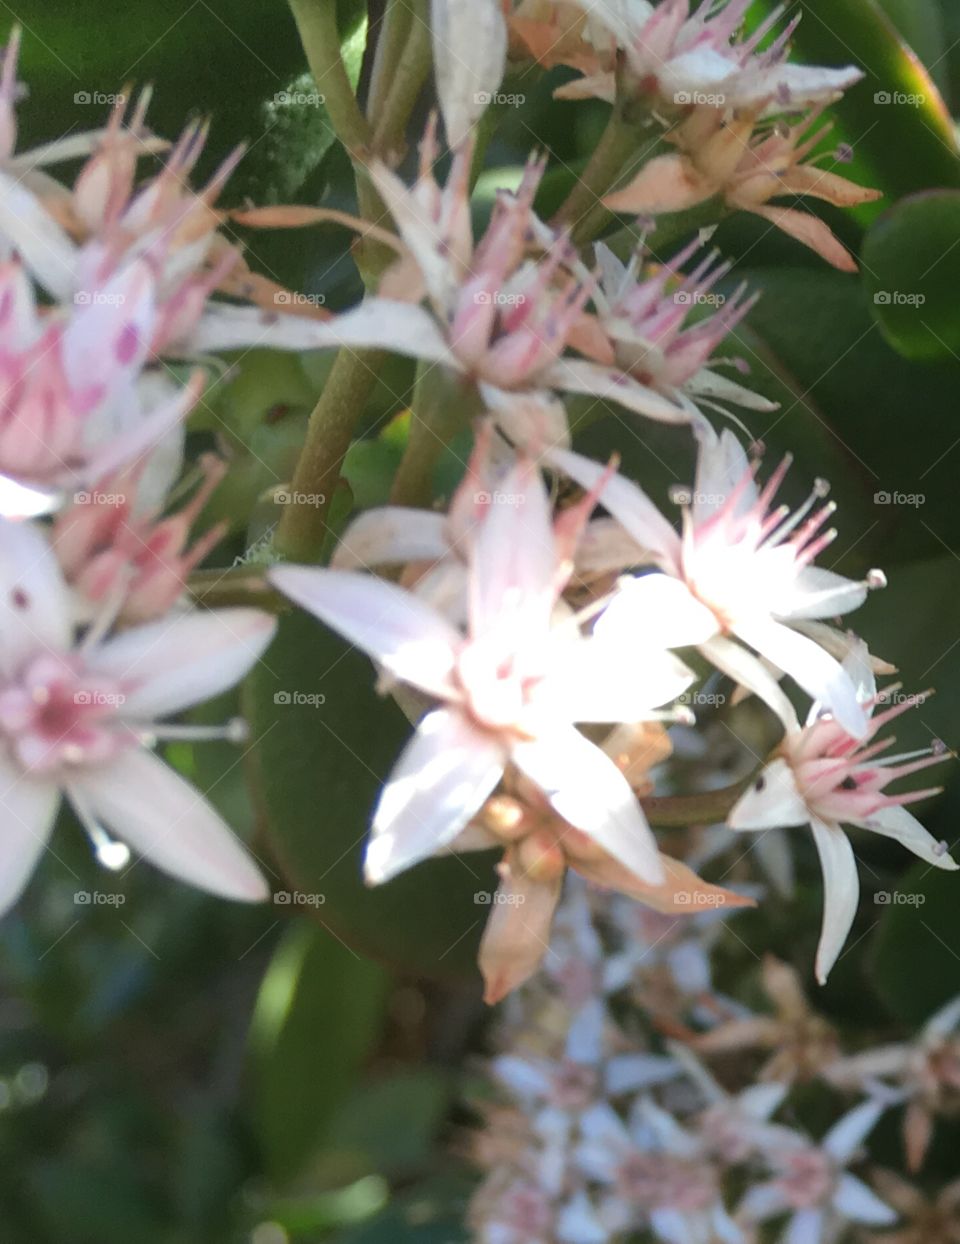 Pretty little flowers 